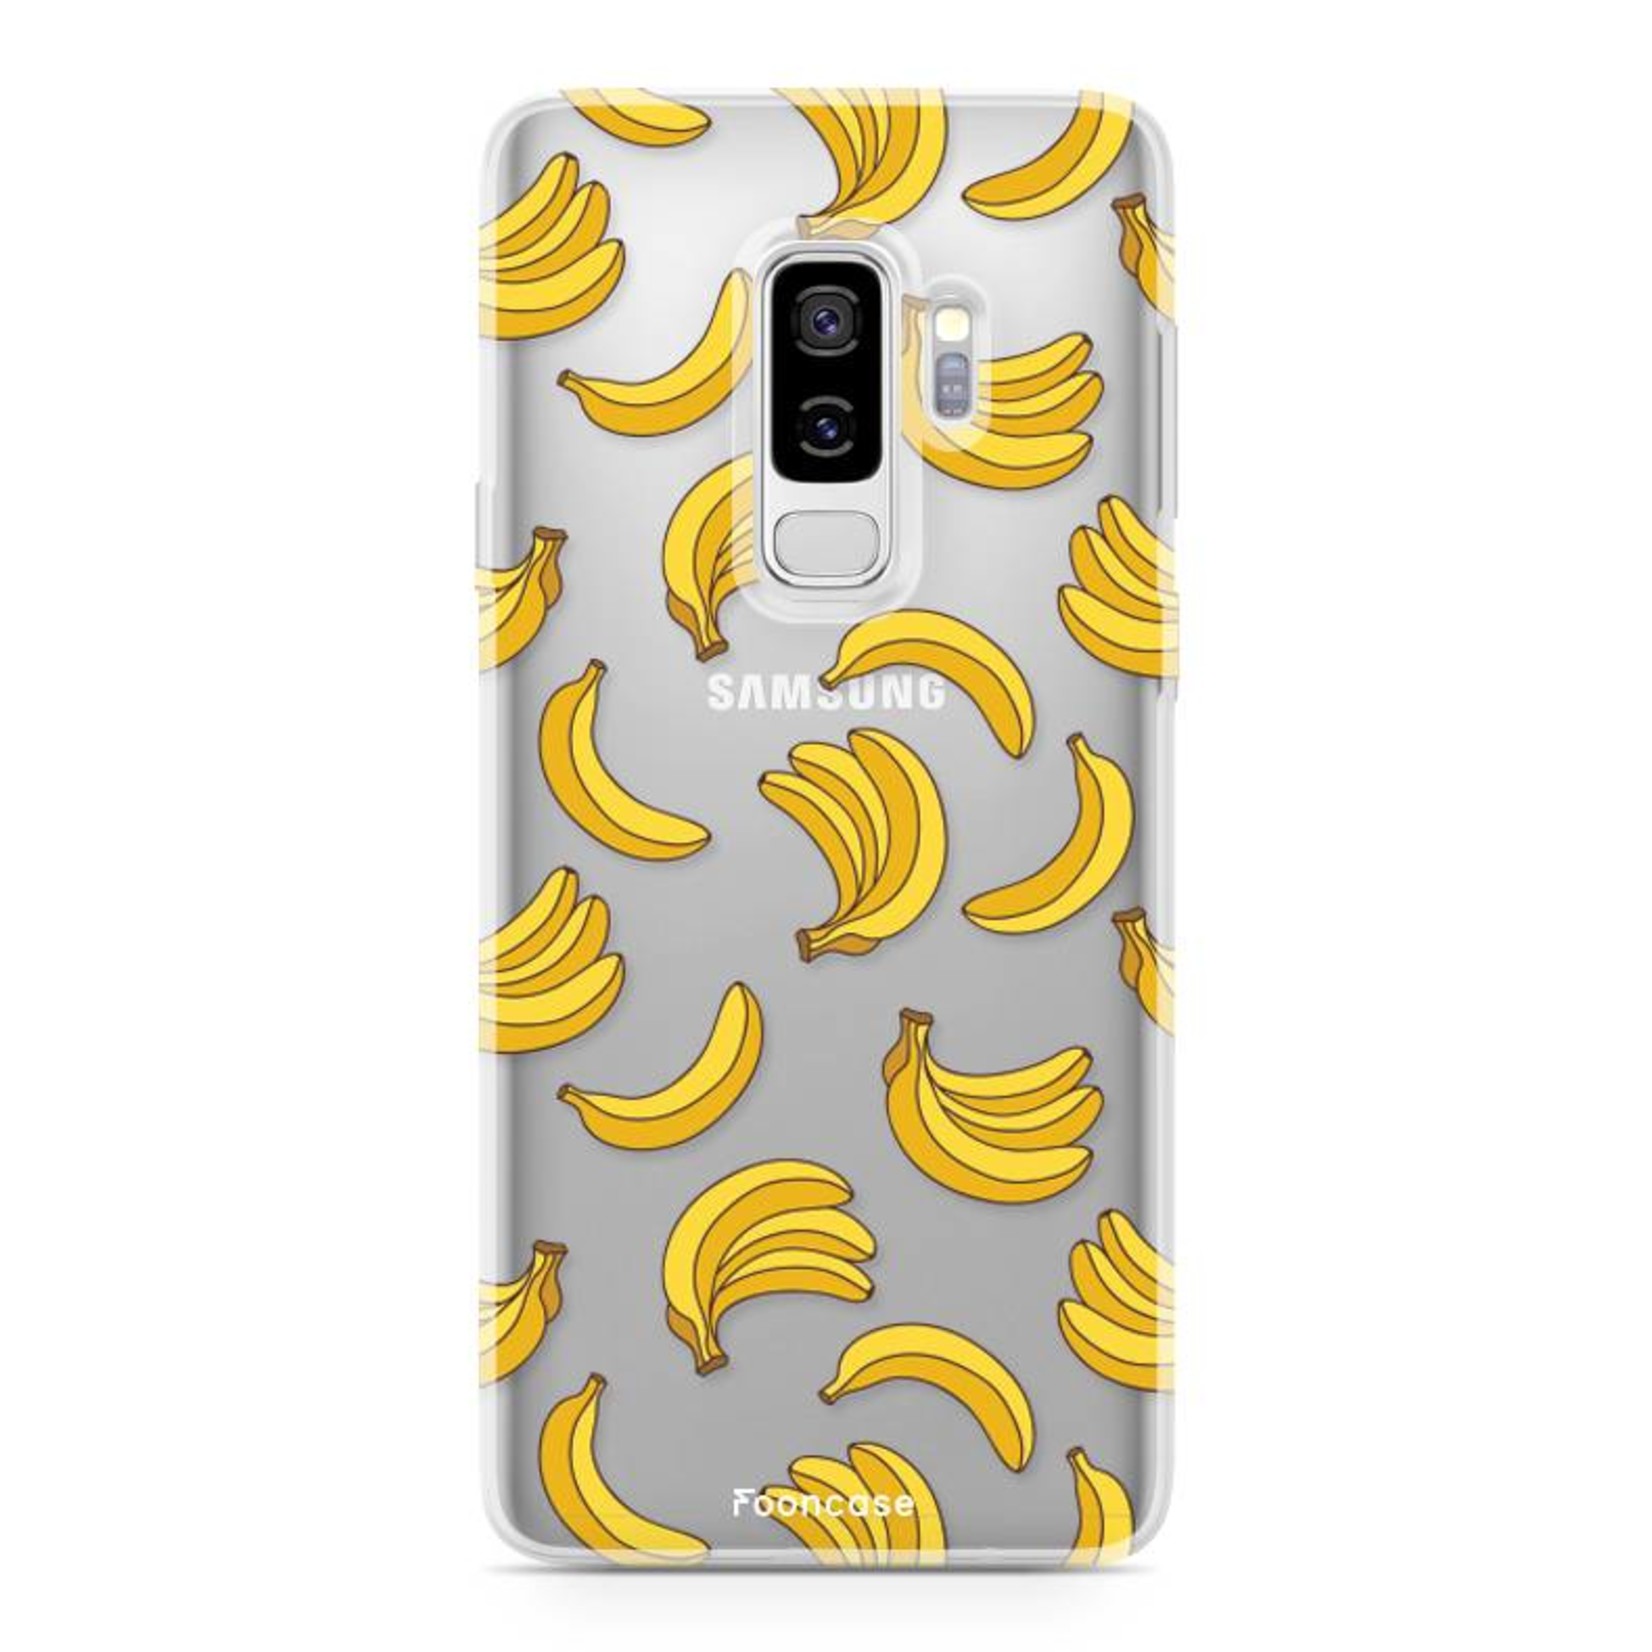 FOONCASE Samsung Galaxy S9 Plus Cover - Bananas